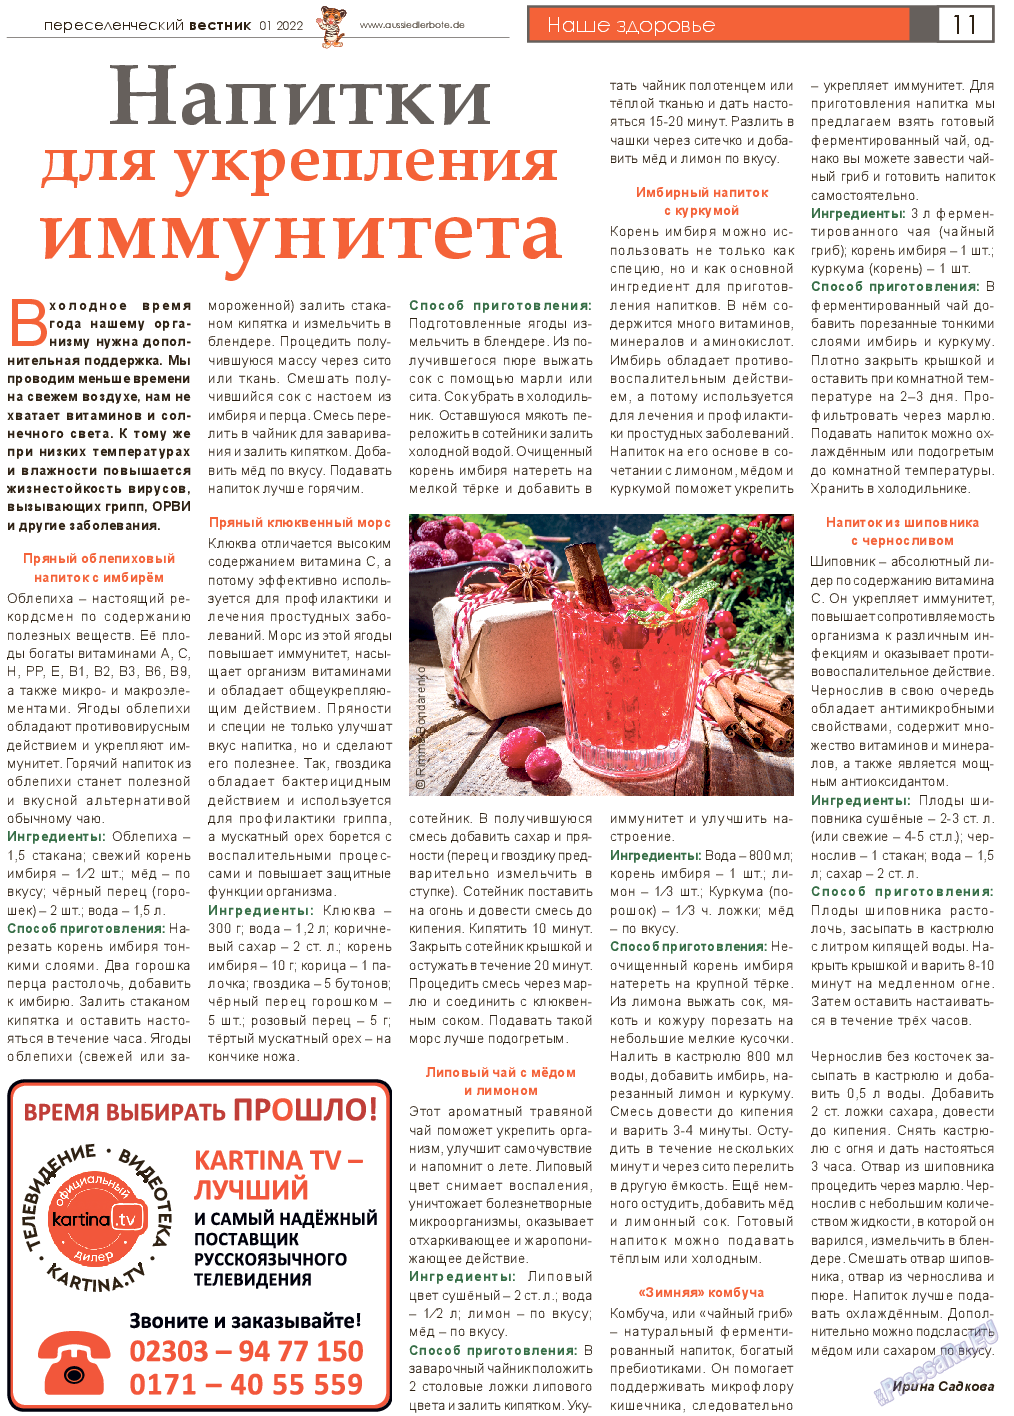 Переселенческий вестник (газета). 2022 год, номер 1, стр. 11